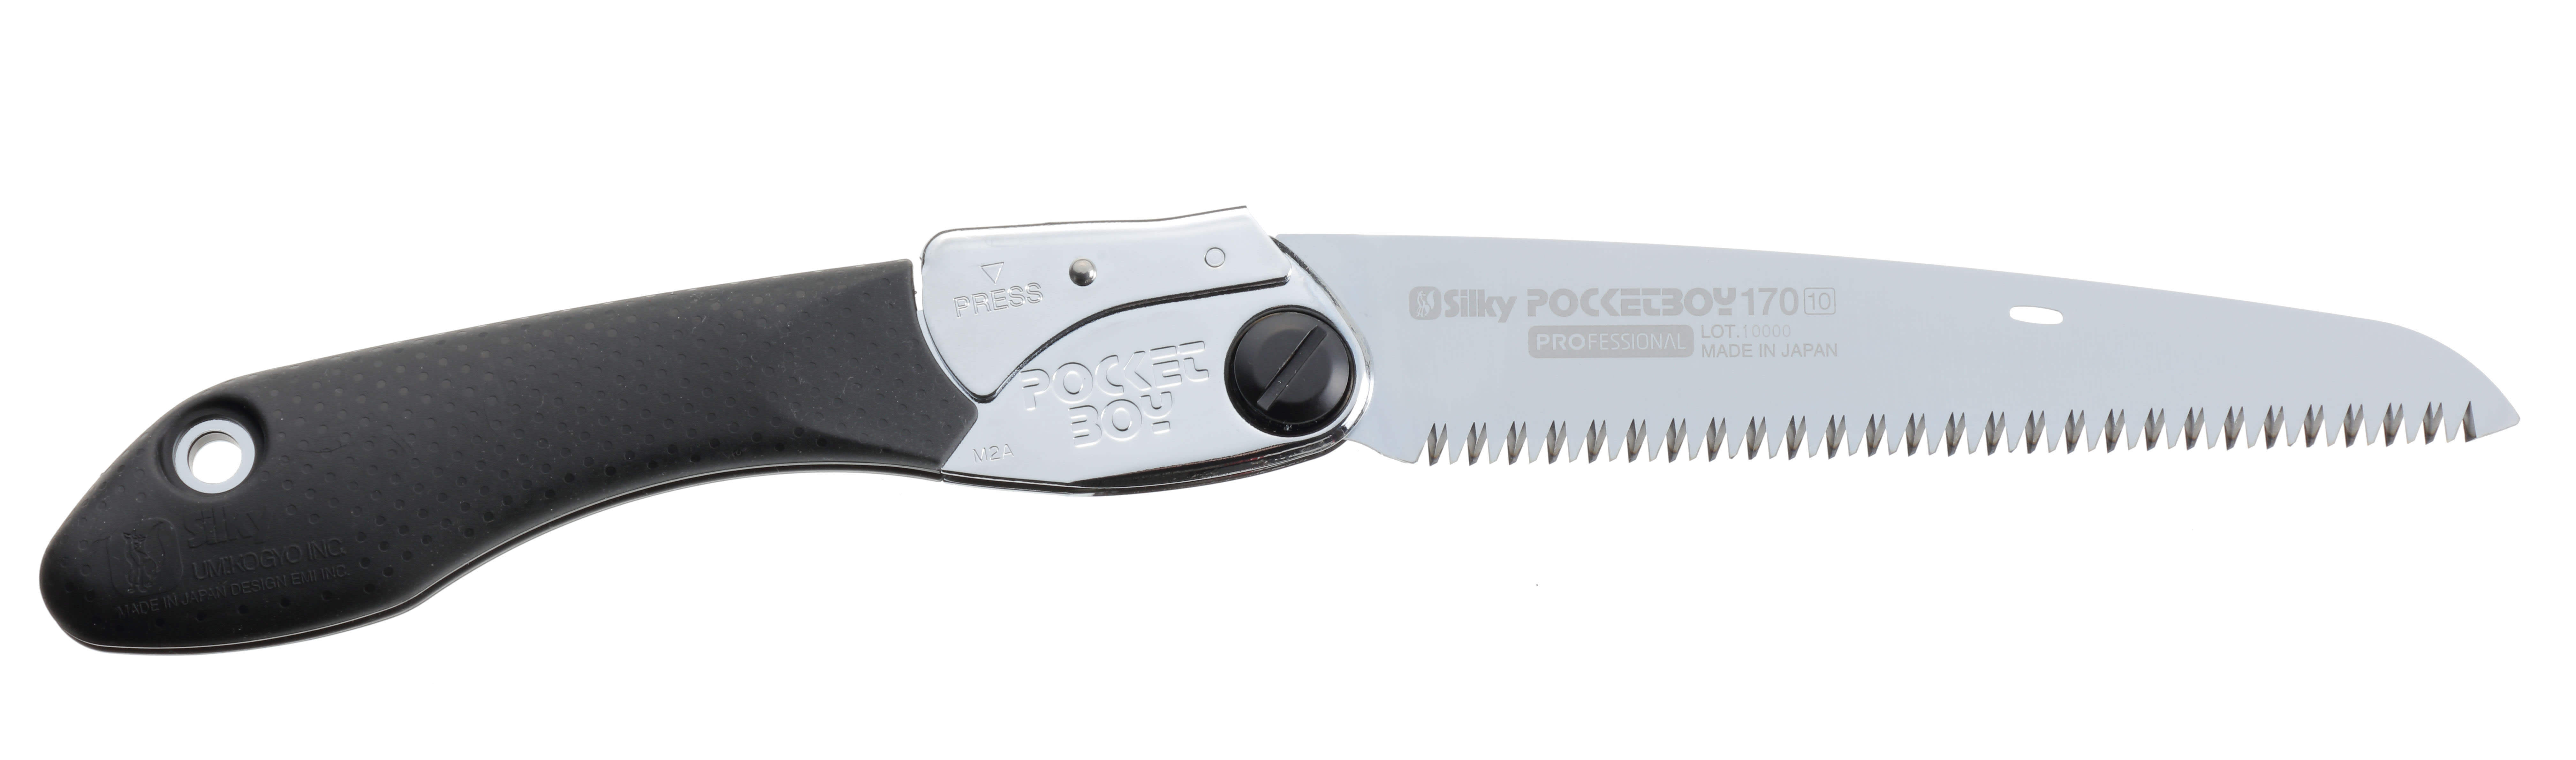 Silky® Pocketboy 170mm Saw - Medium Teeth